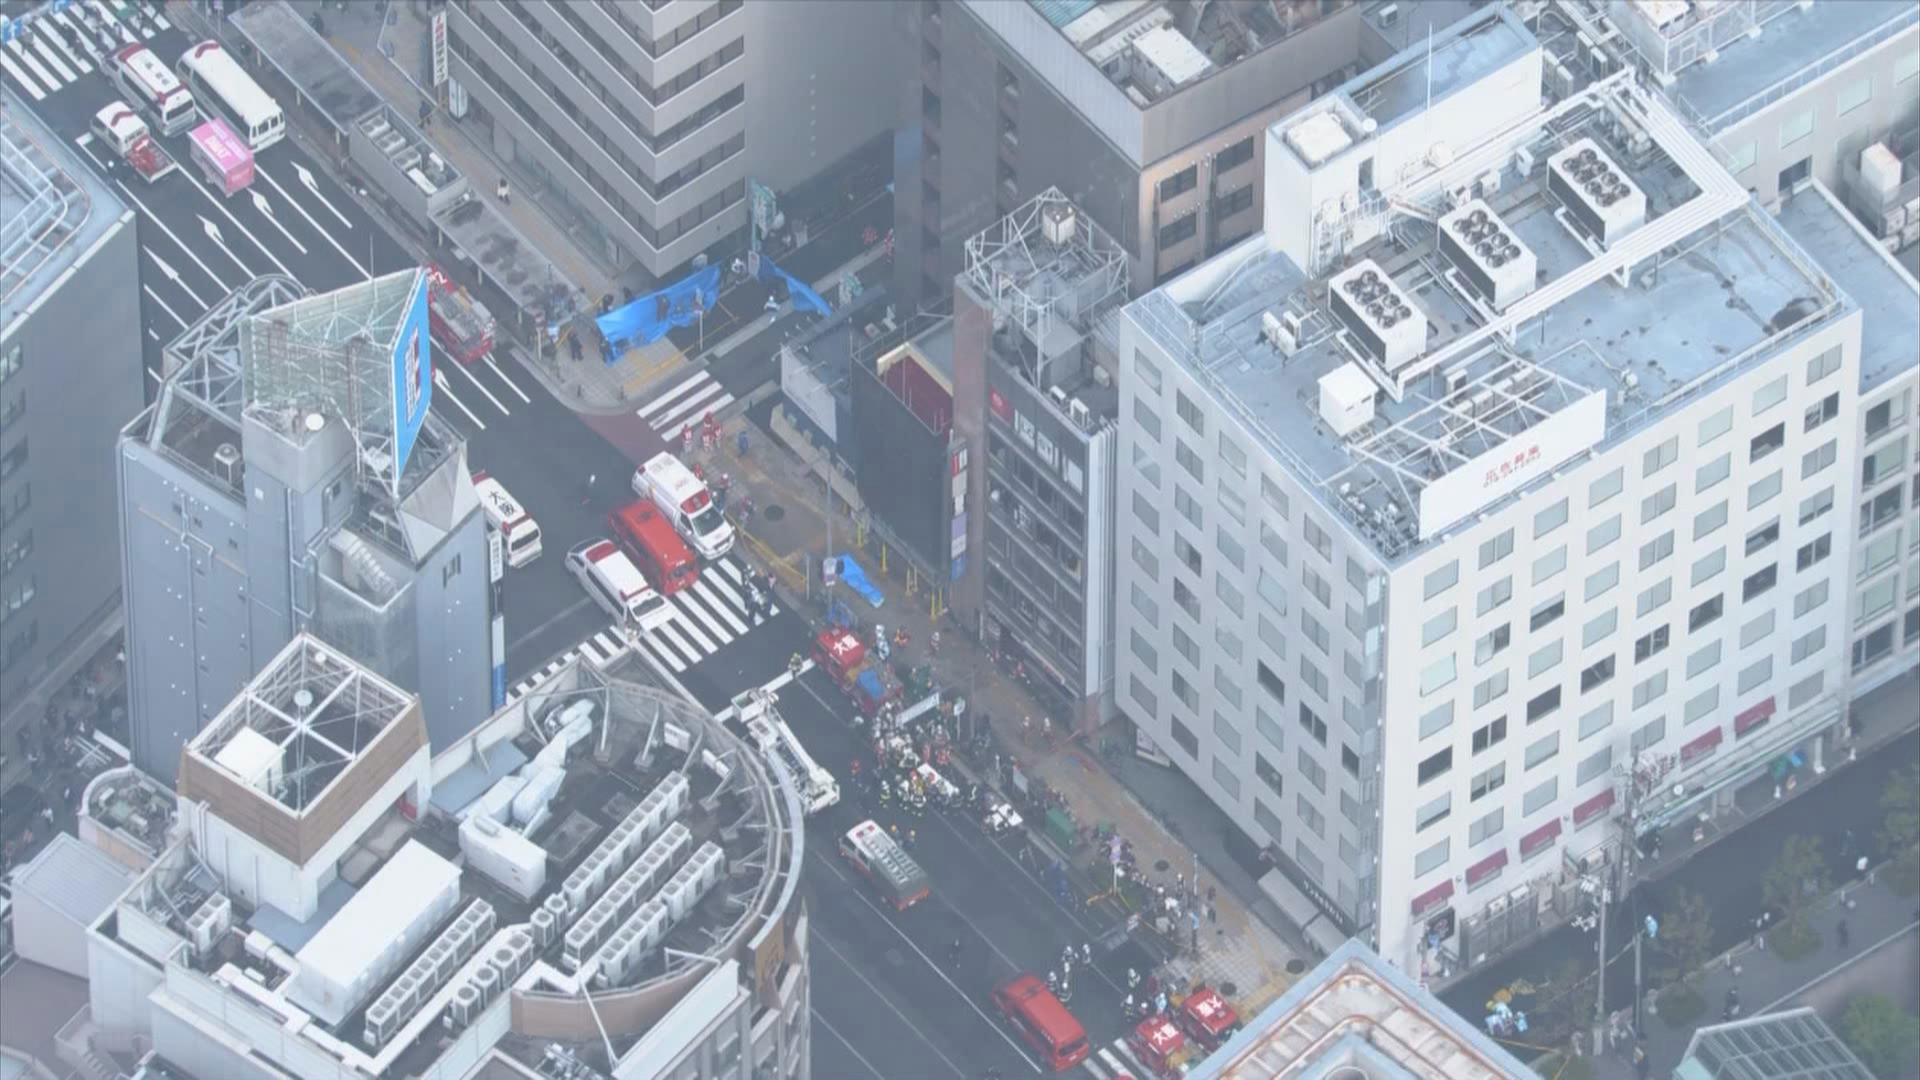 2021년 12월 17일 오전 방화로 24명이 숨진 일본 오사카시 번화가 8층 건물 (화면 가운데)   / NHK 화면 갈무리